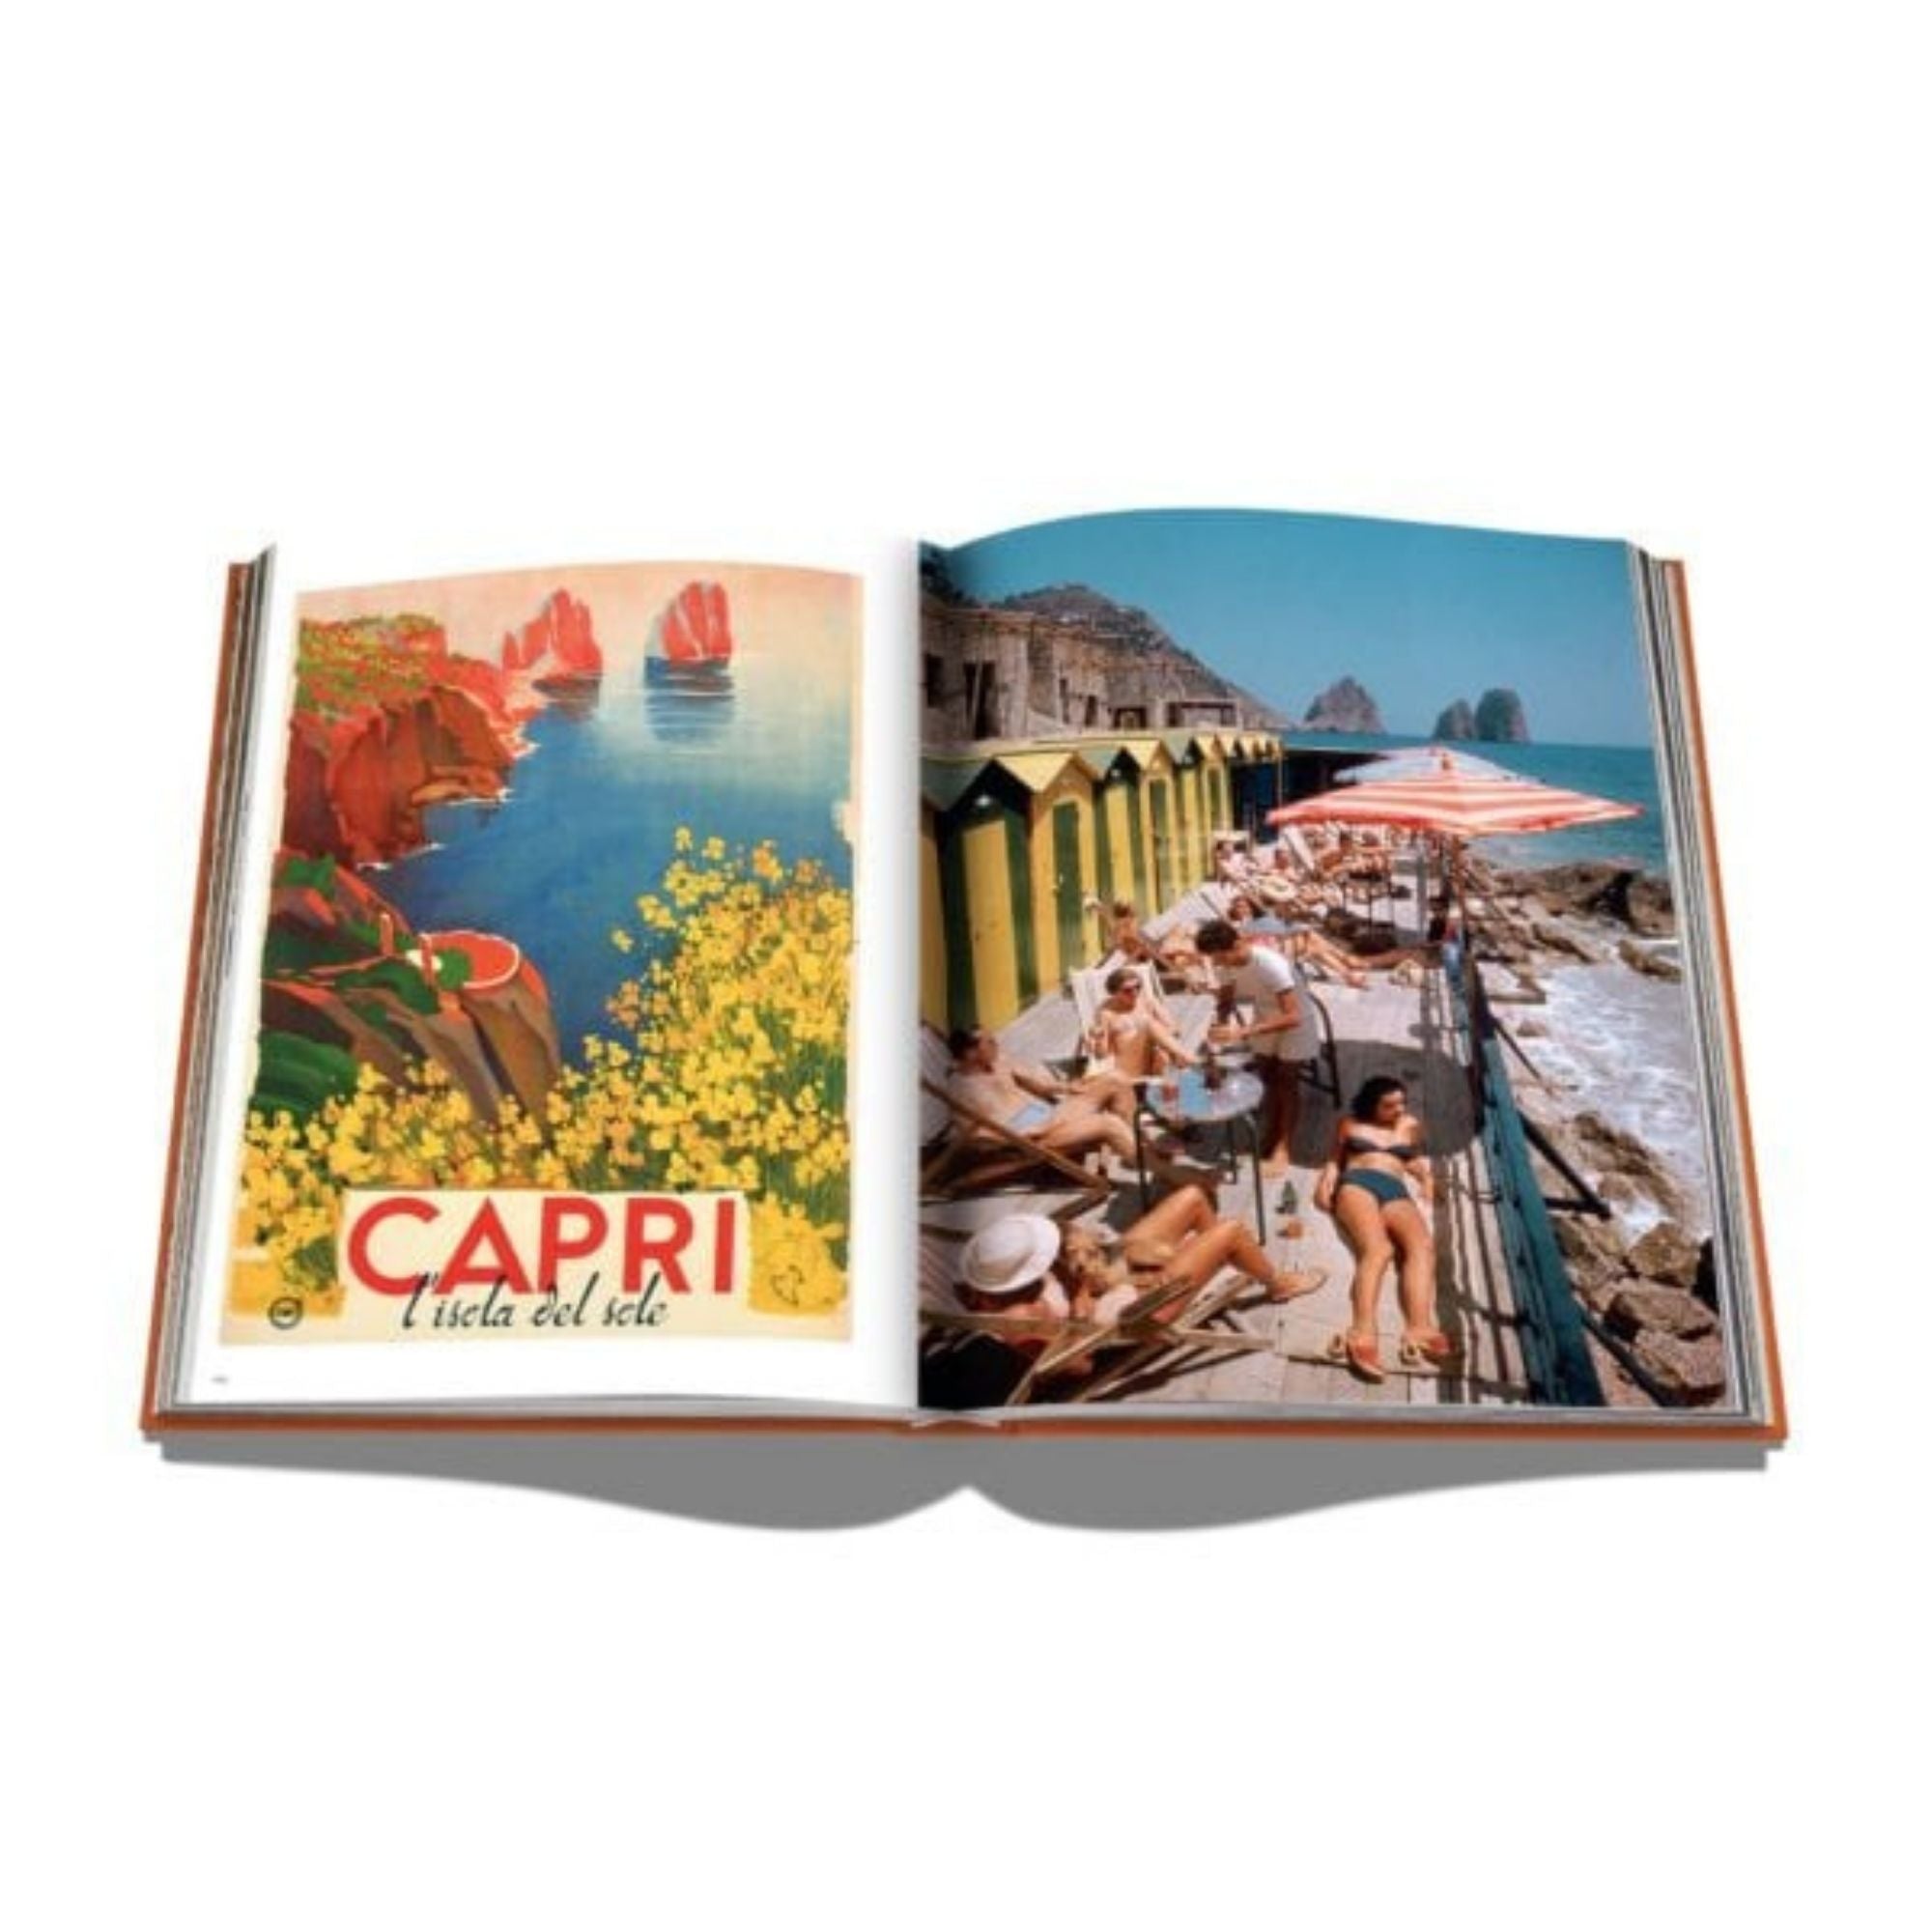 Capri Dolce Vita Book Assouline